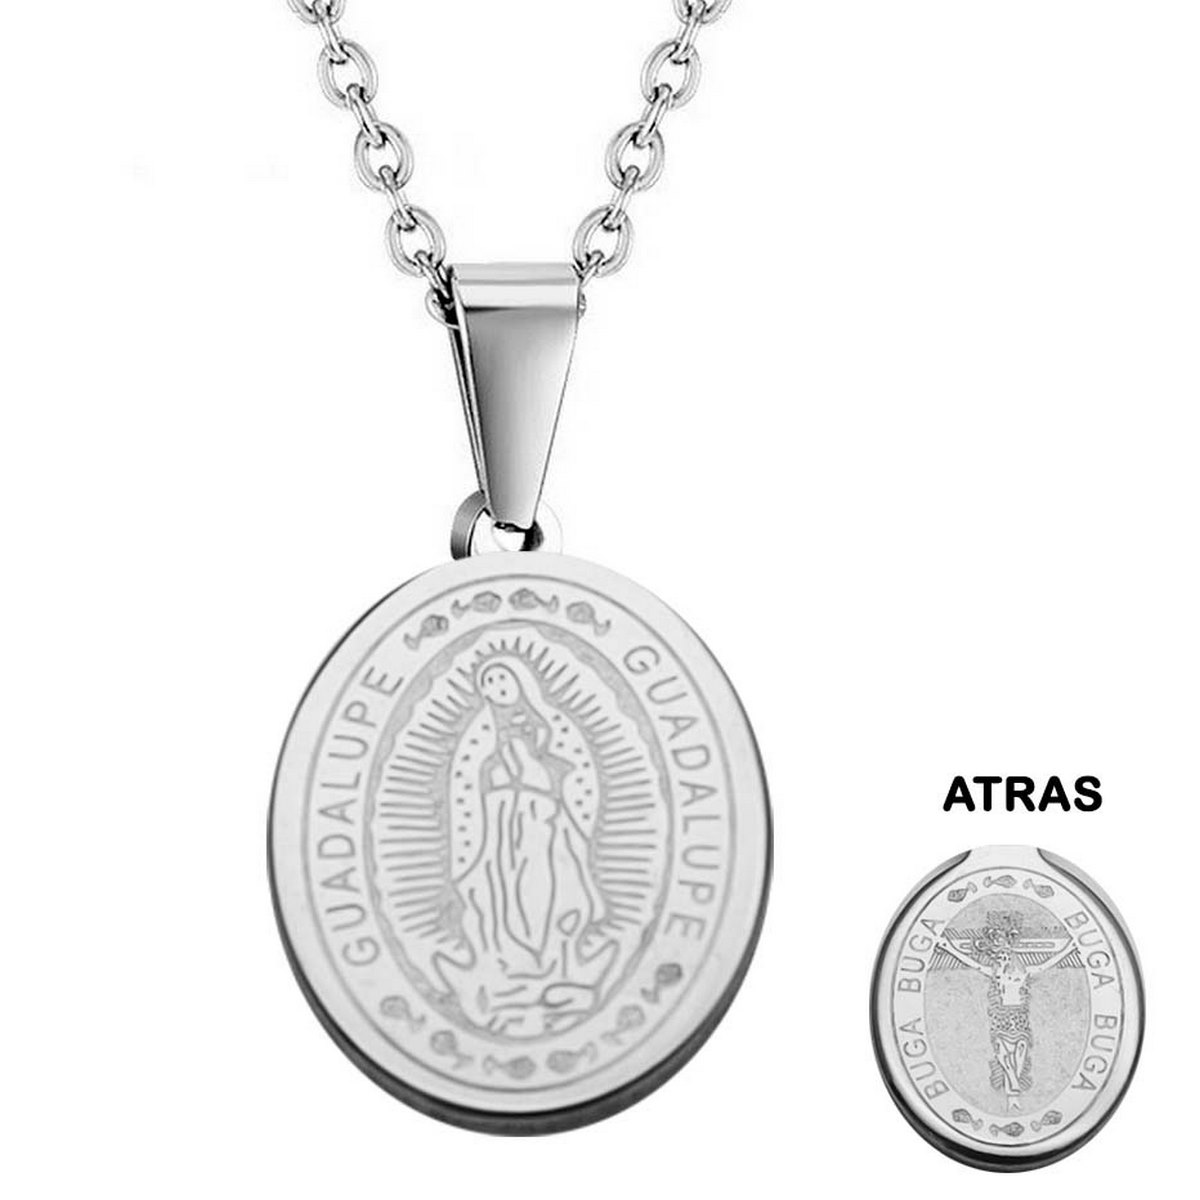 Collar Medalla Virgen De Guadalupe - Señor De Los Milagros